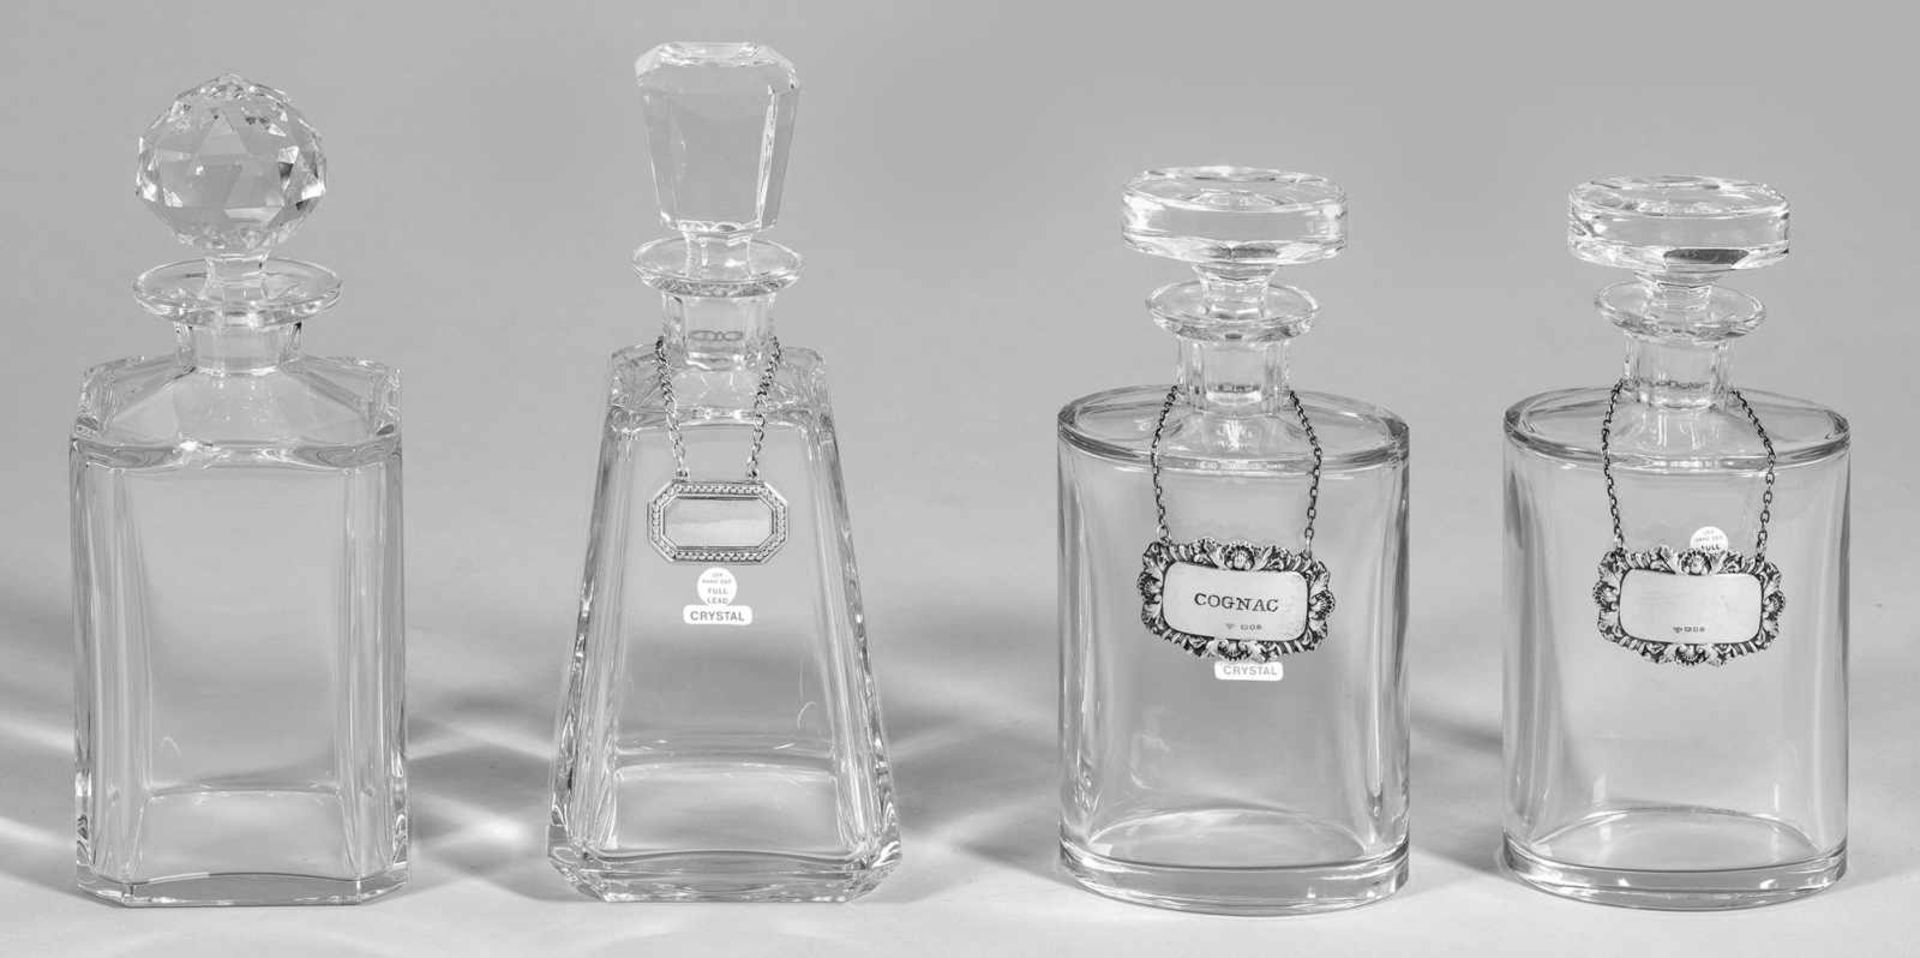 Vier KaraffenKristallglas. Ovaler, quadratischer bzw. konischer Korpus mit abgesetzter Schulter.